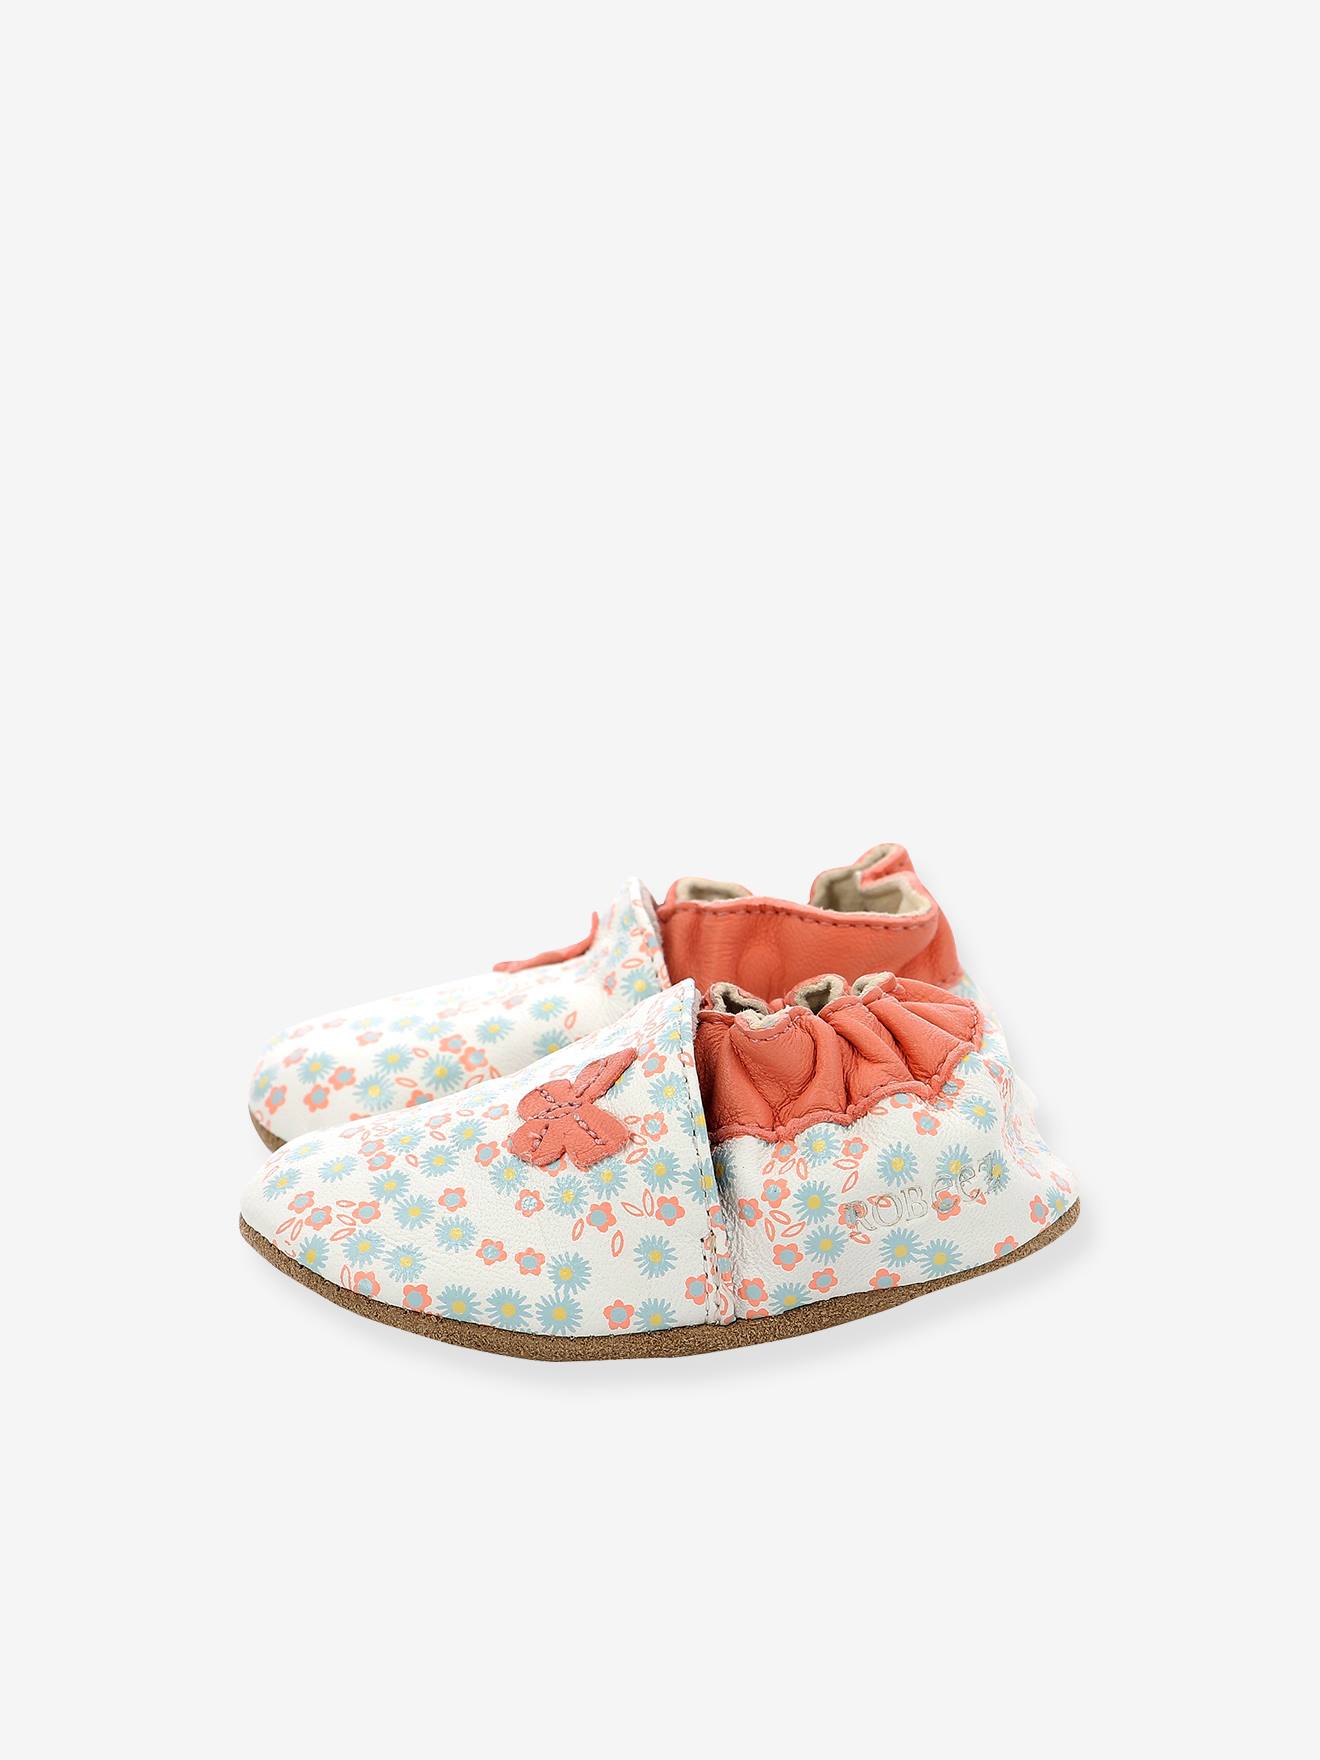 Chaussons cuir souple bébé Daisy Summer ROBEEZ© - blanc imprimé, Chaussures